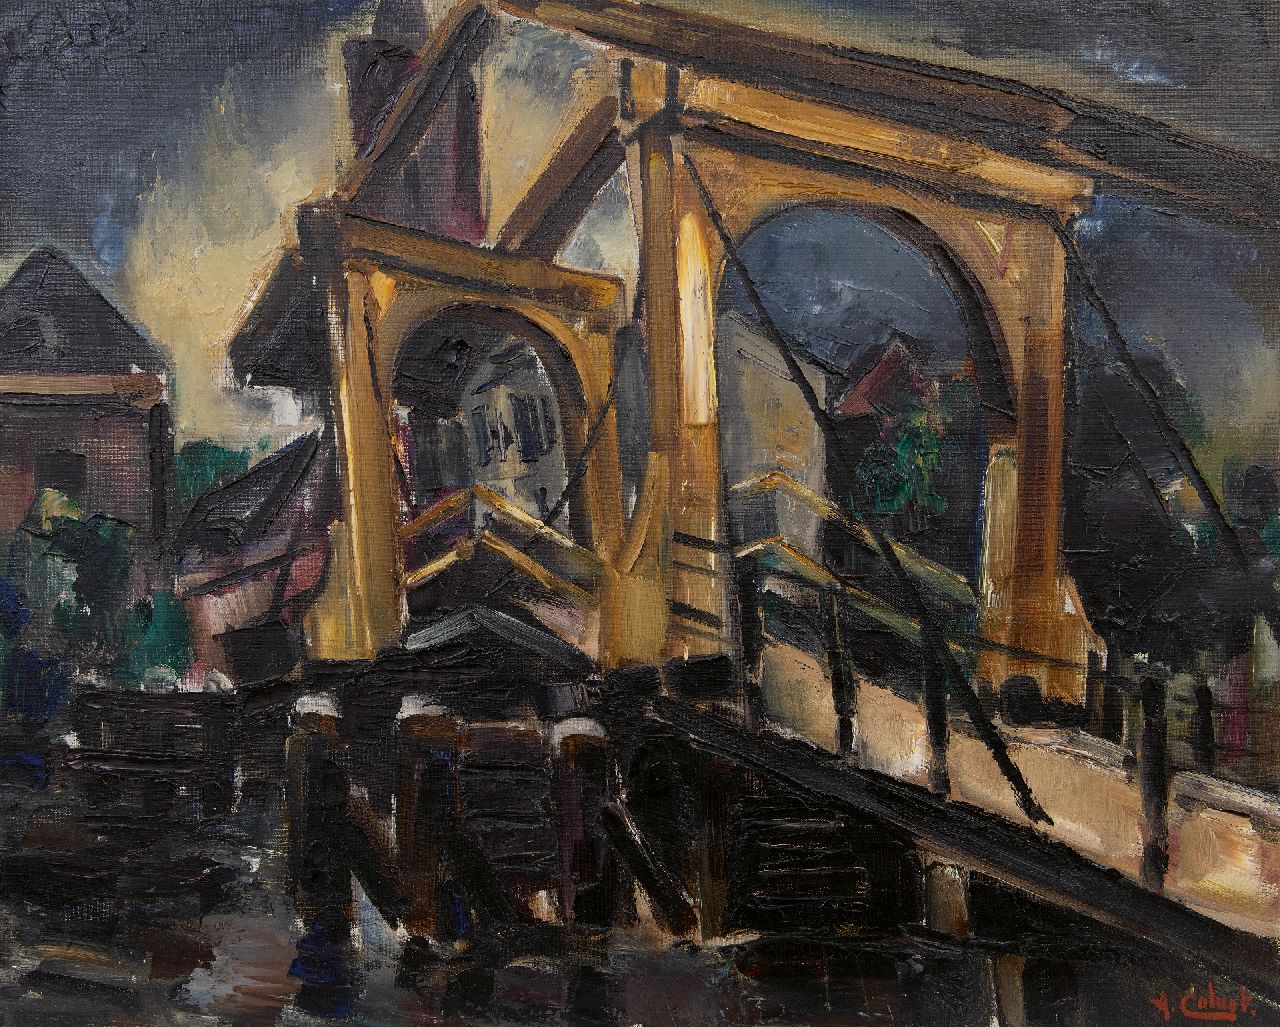 Colnot A.J.G.  | 'Arnout' Jacobus Gustaaf Colnot | Schilderijen te koop aangeboden | Ophaalbrug in Loenen aan de Vecht, olieverf op doek 61,3 x 76,9 cm, gesigneerd rechtsonder